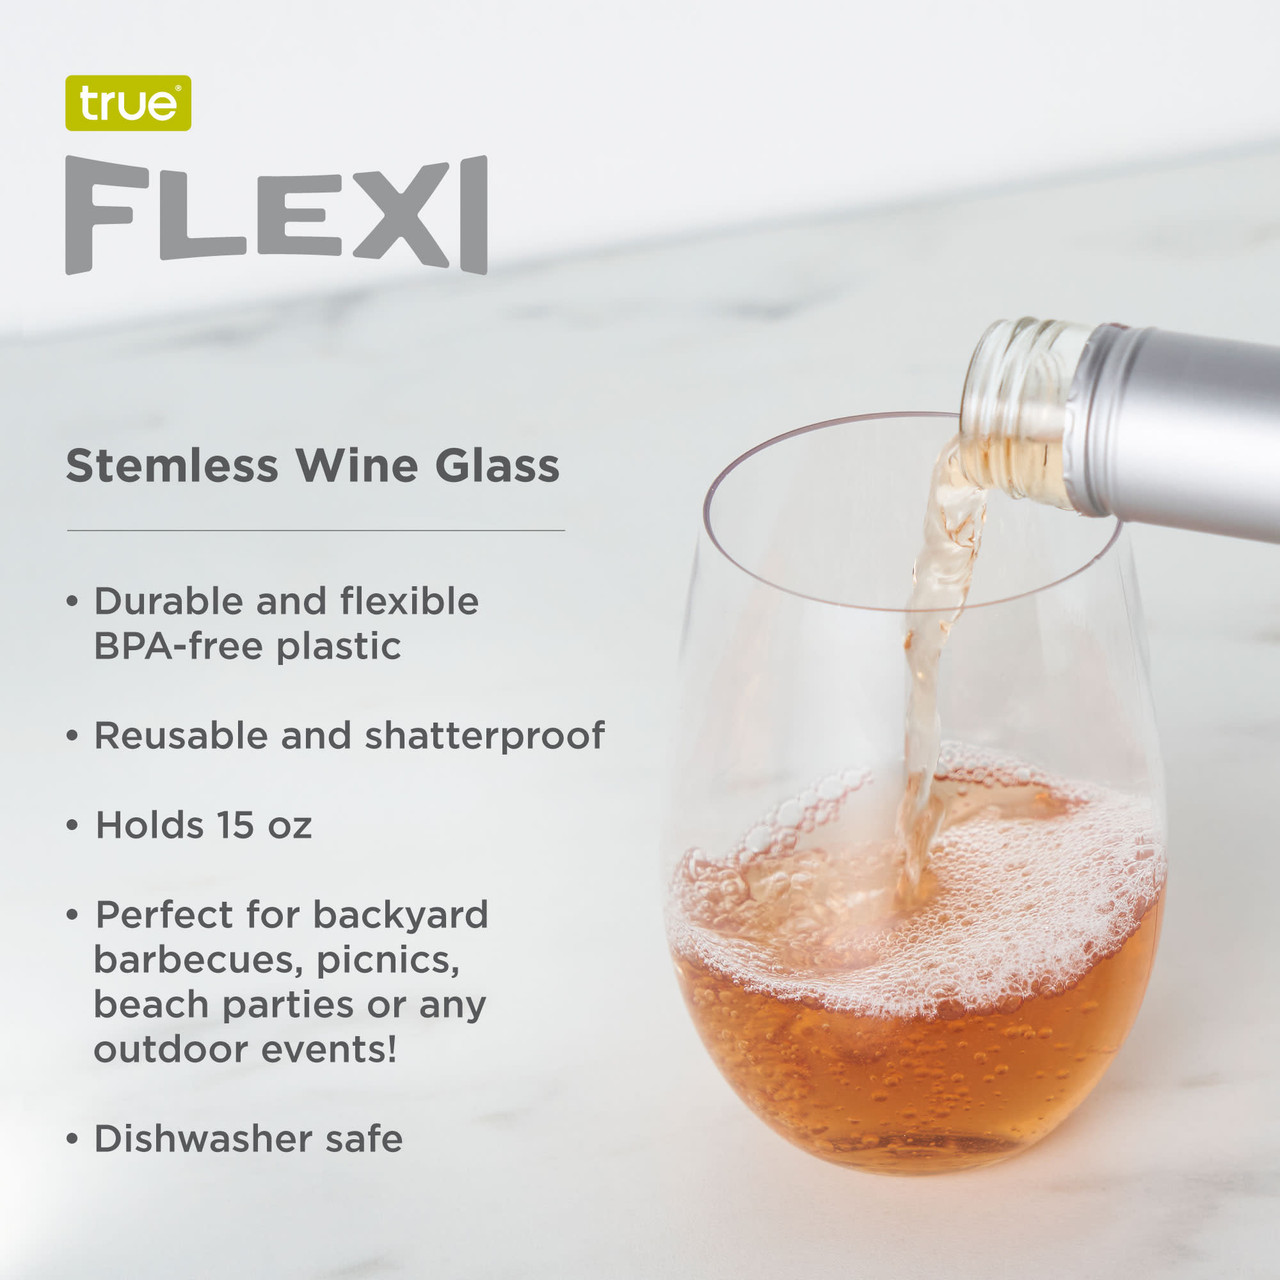 Flexi Stemless Wine Glass by True